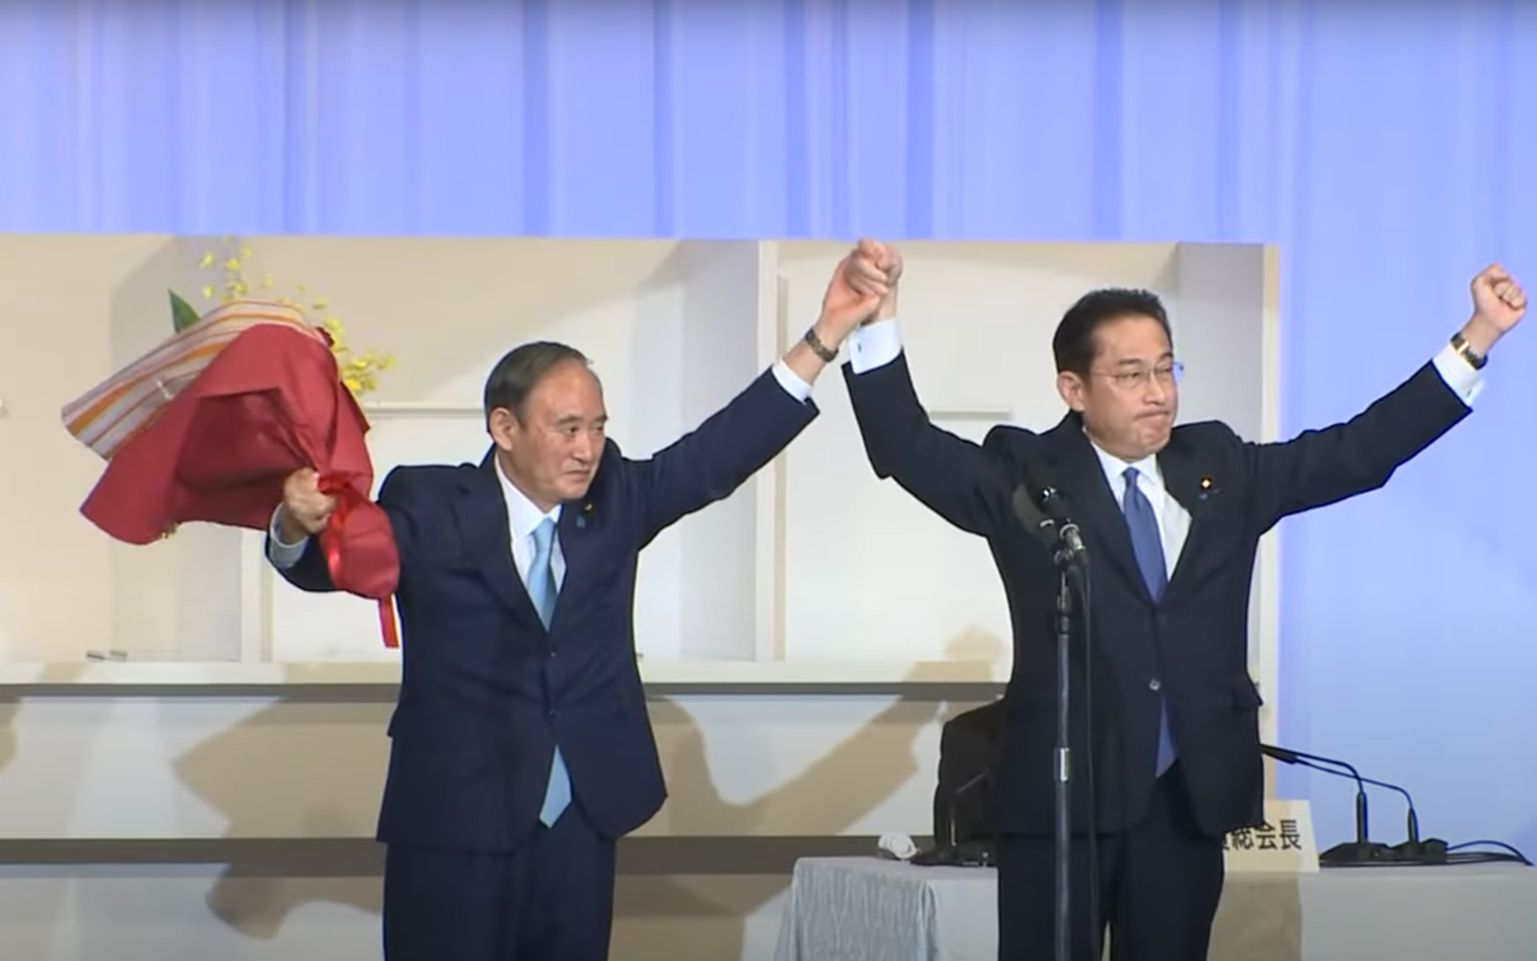 岸田文雄即将就任日本第100任首相 向菅义伟鞠躬致谢、献上鲜花